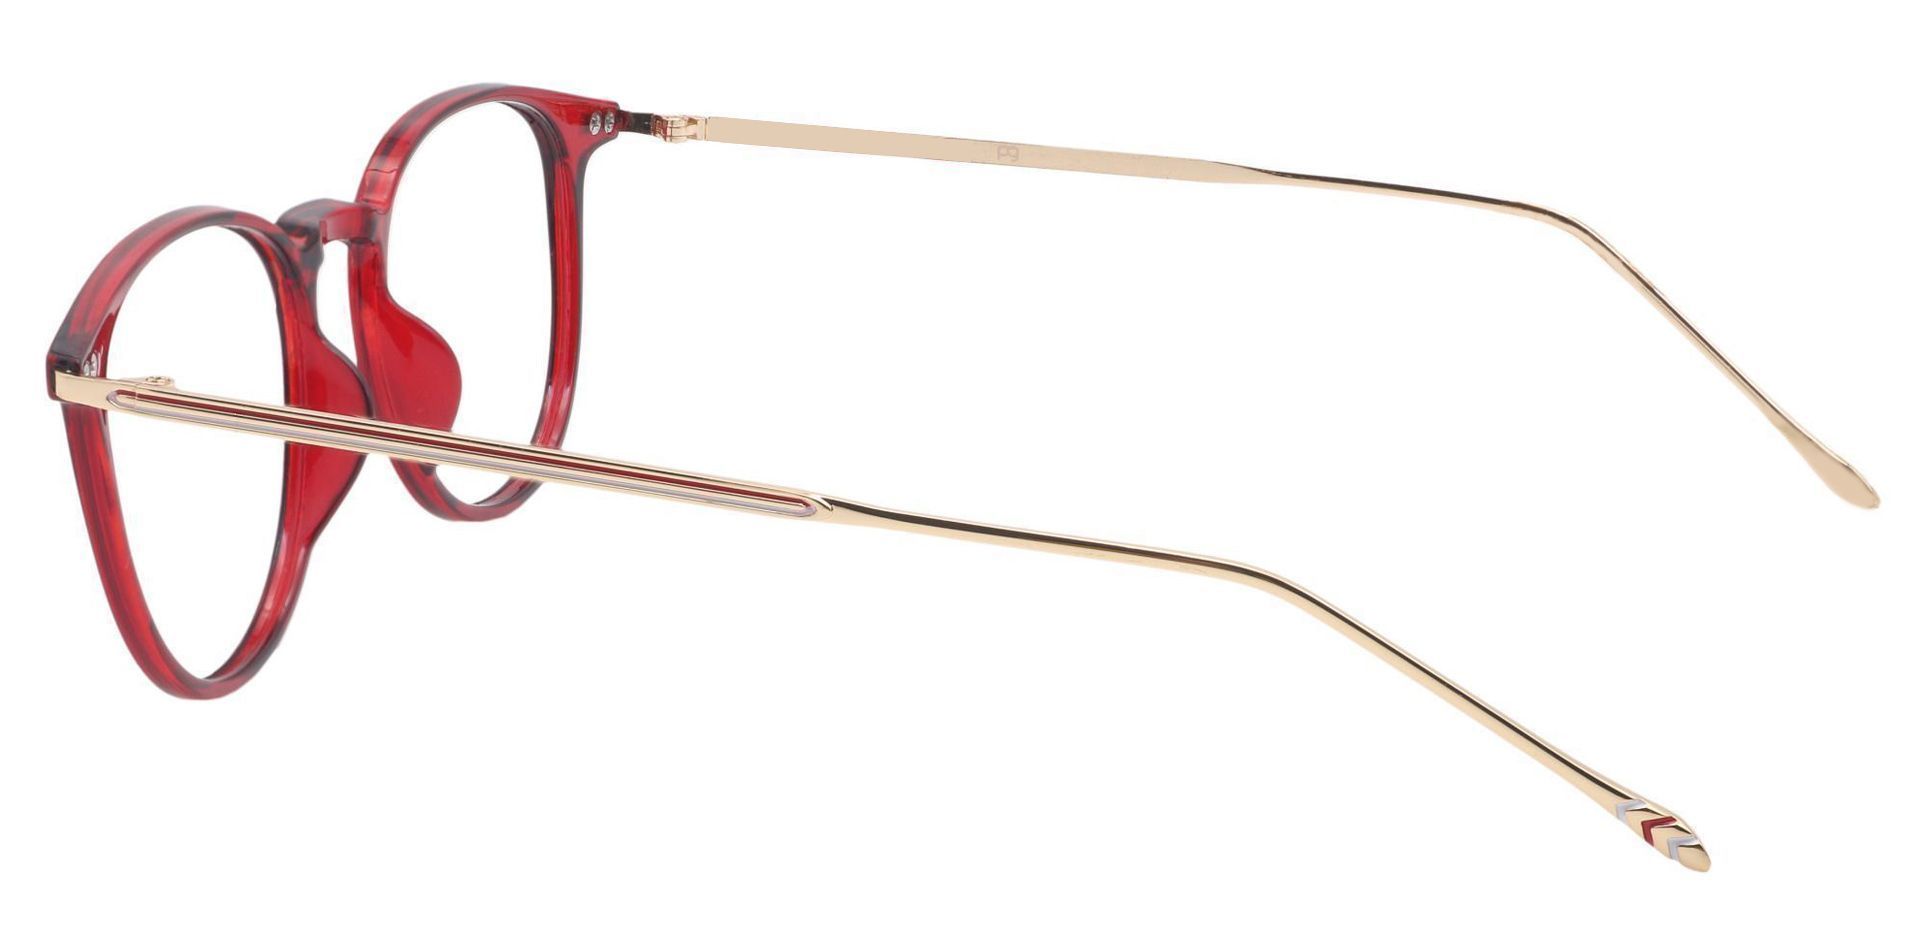 Elliott Round Eyeglasses Frame - Red